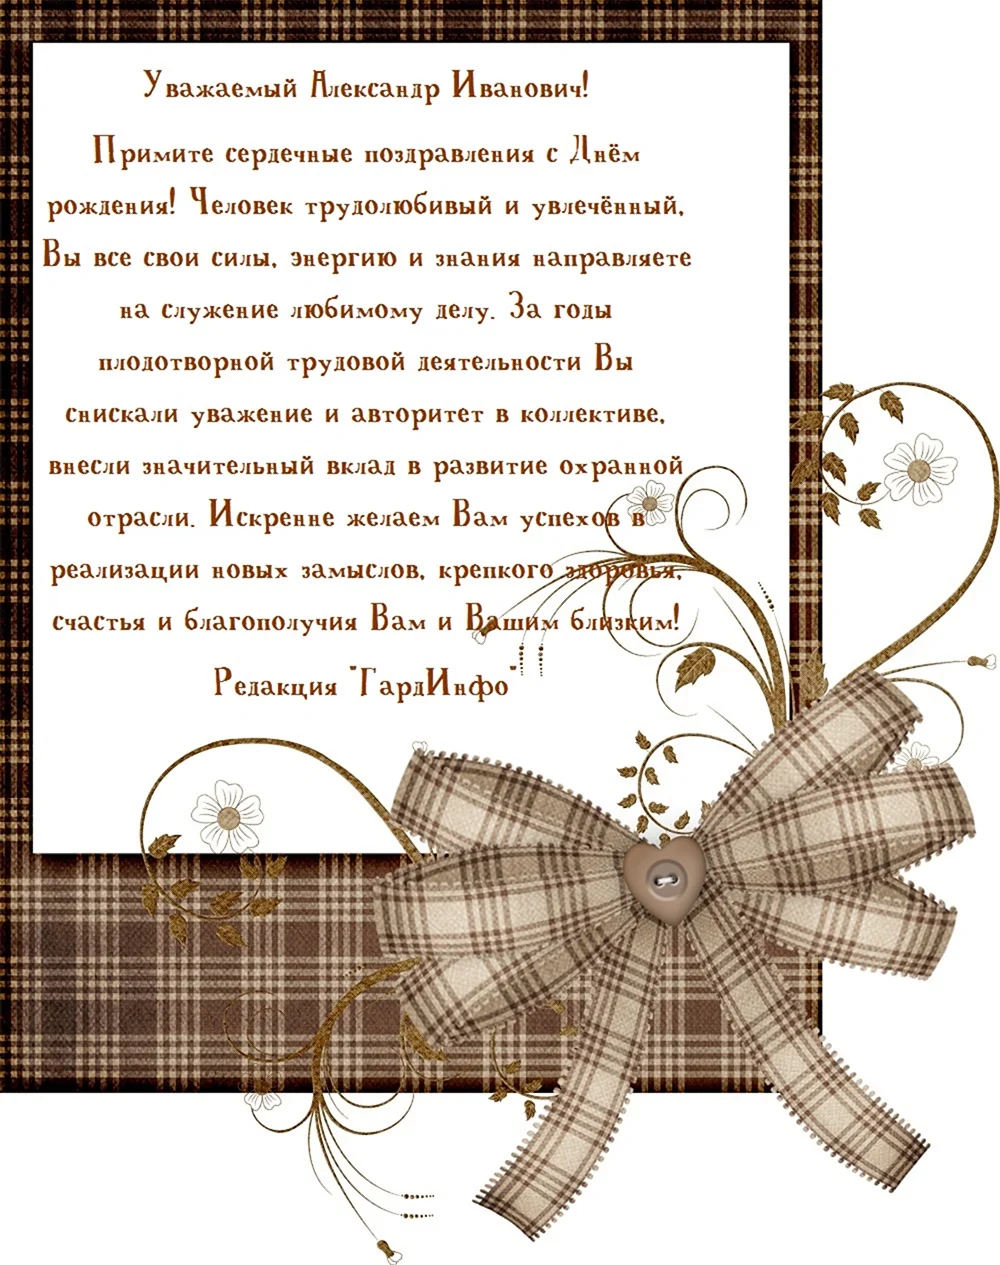 Поздравления с днём рождения Александру Ивановичу. Открытка с днем рождения